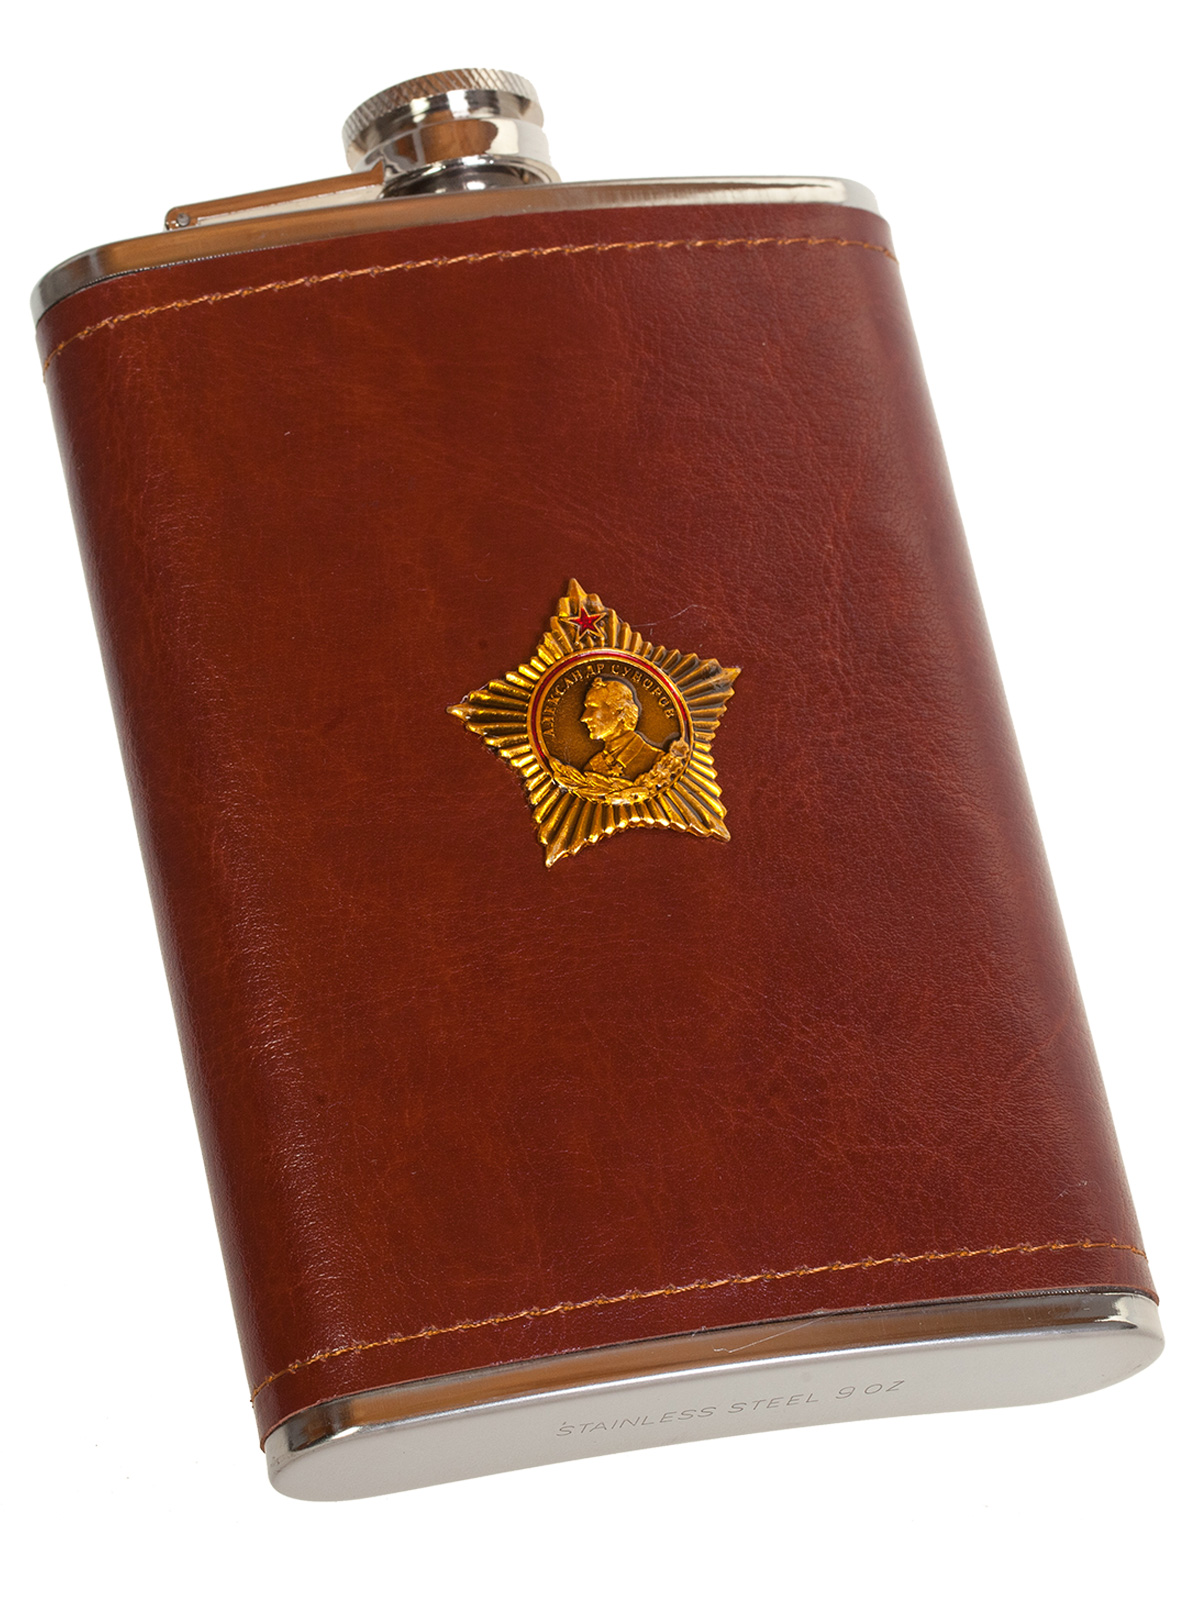 Плоская нержавеющая фляжка в чехле с Орденом Суворова 